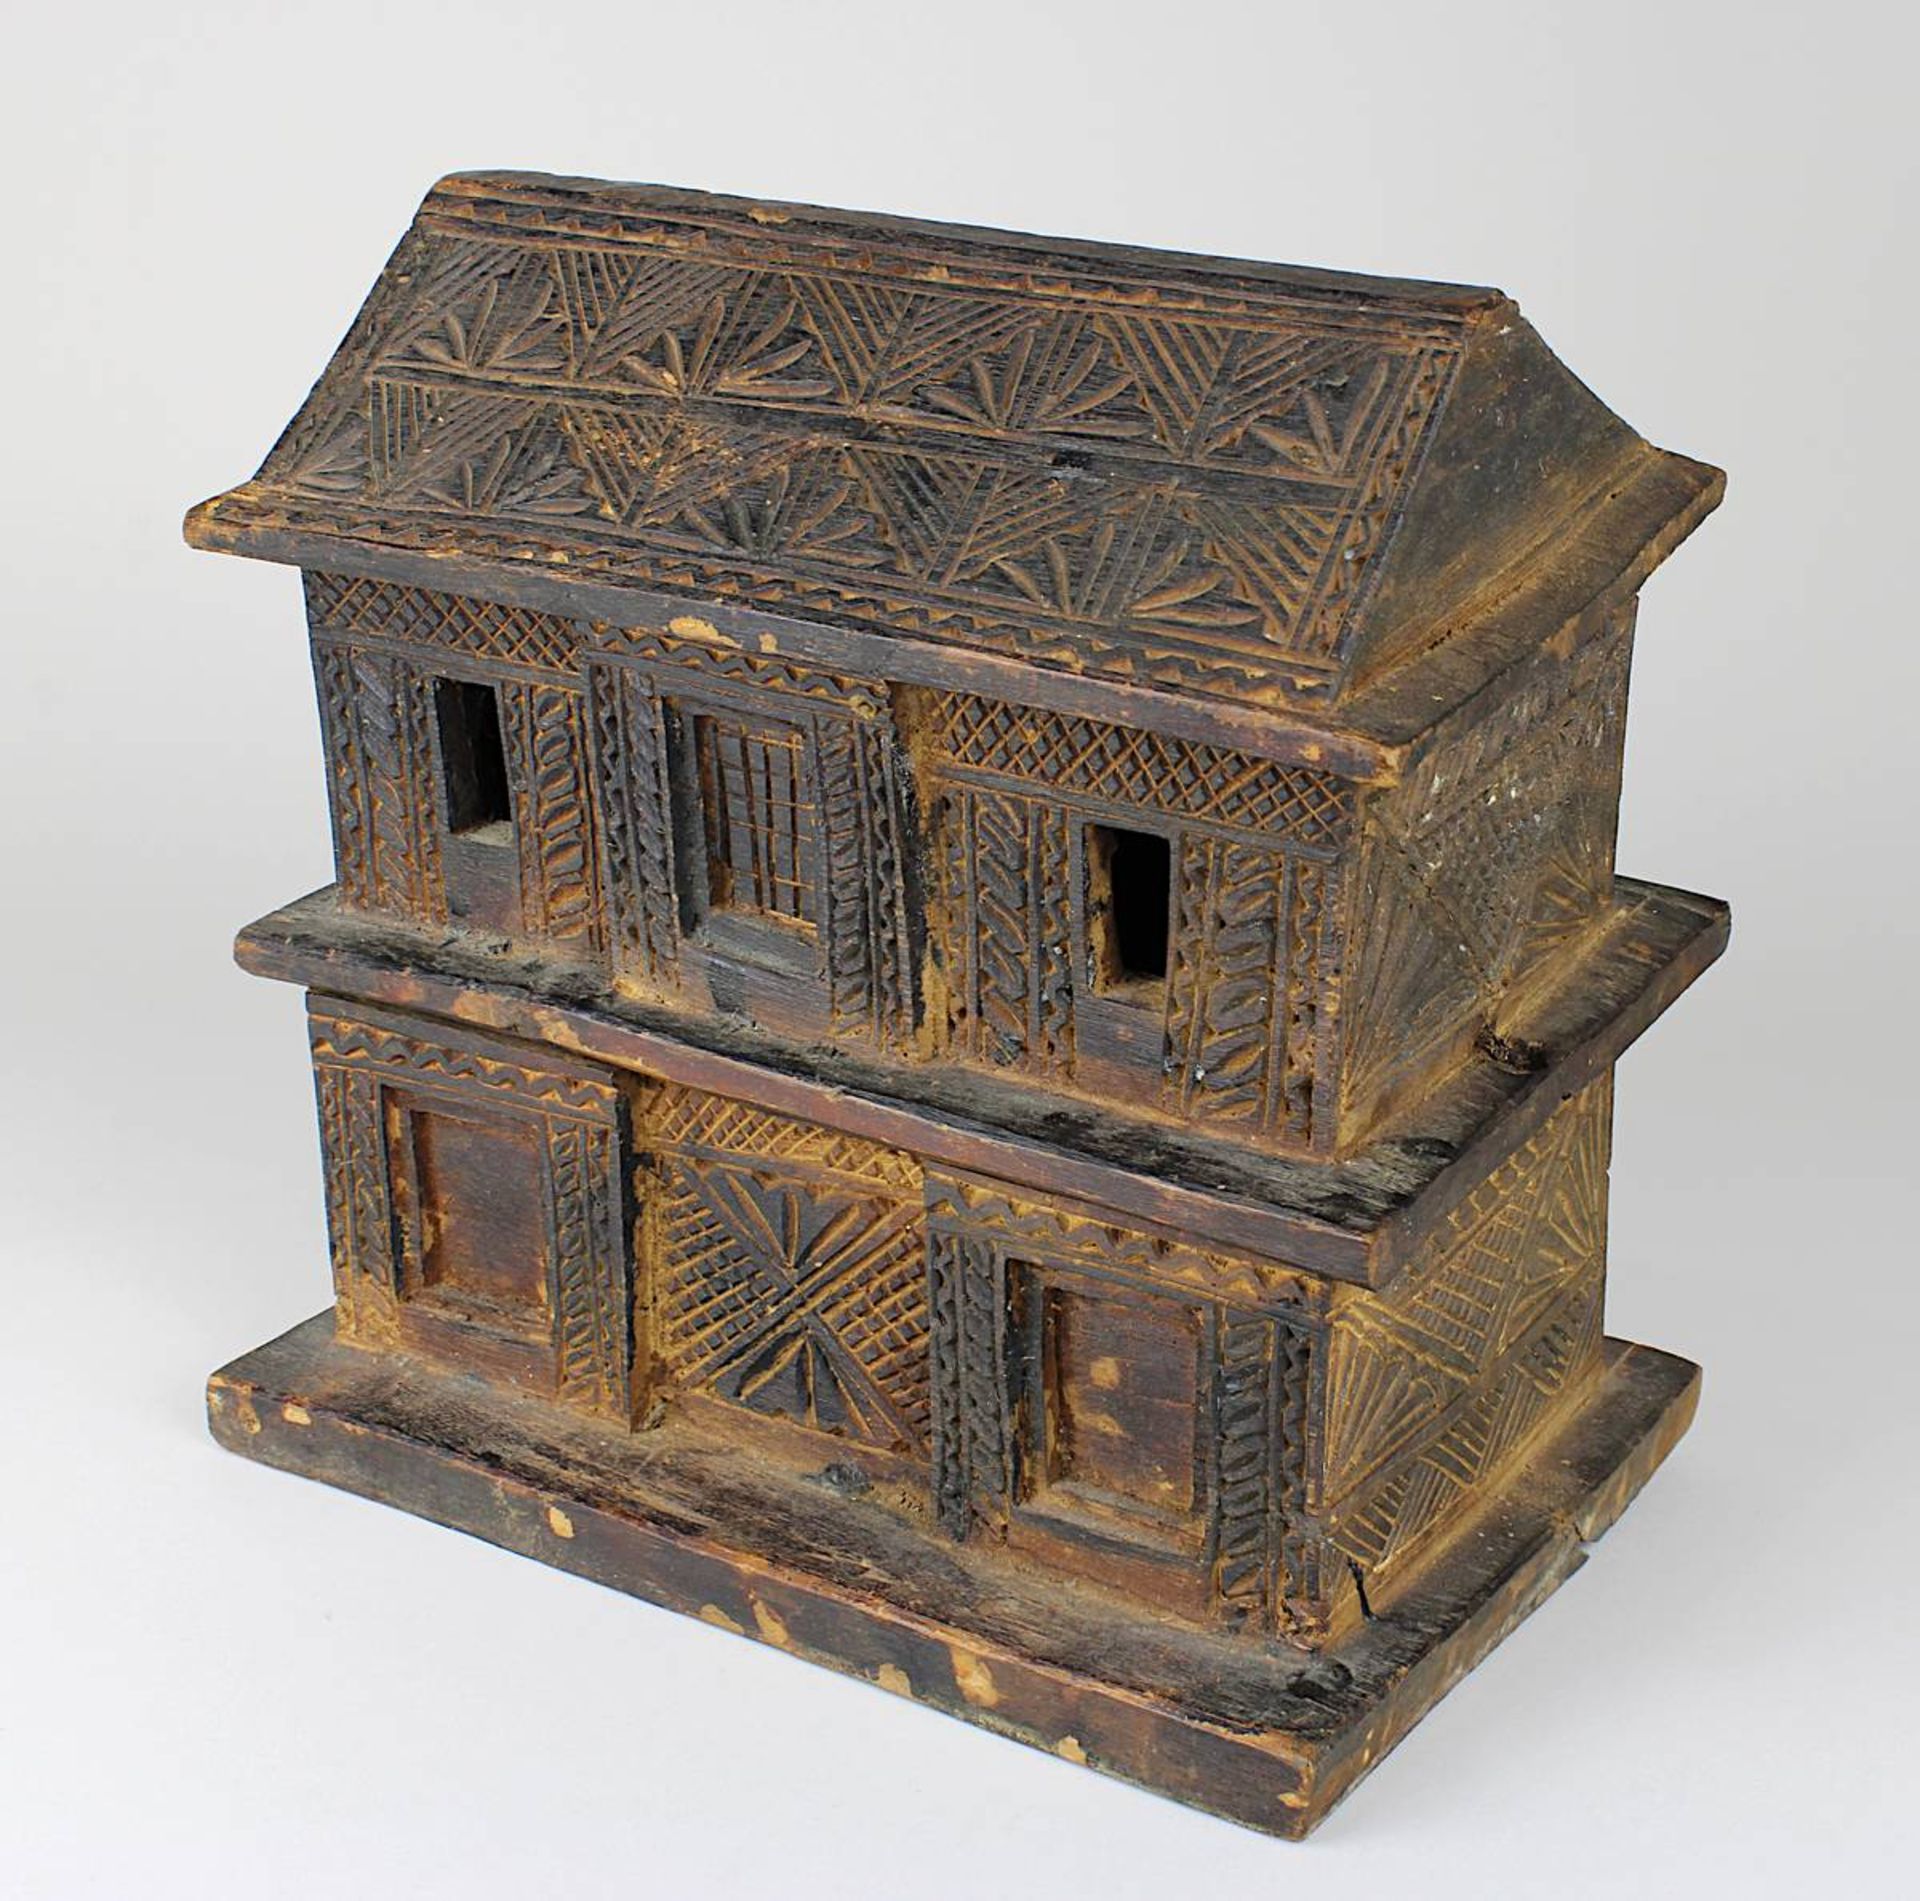 Holzdose in Form eines zweistöckigen Hauses, wohl Indien, 3-teilig, Dach und 1. Stock durch